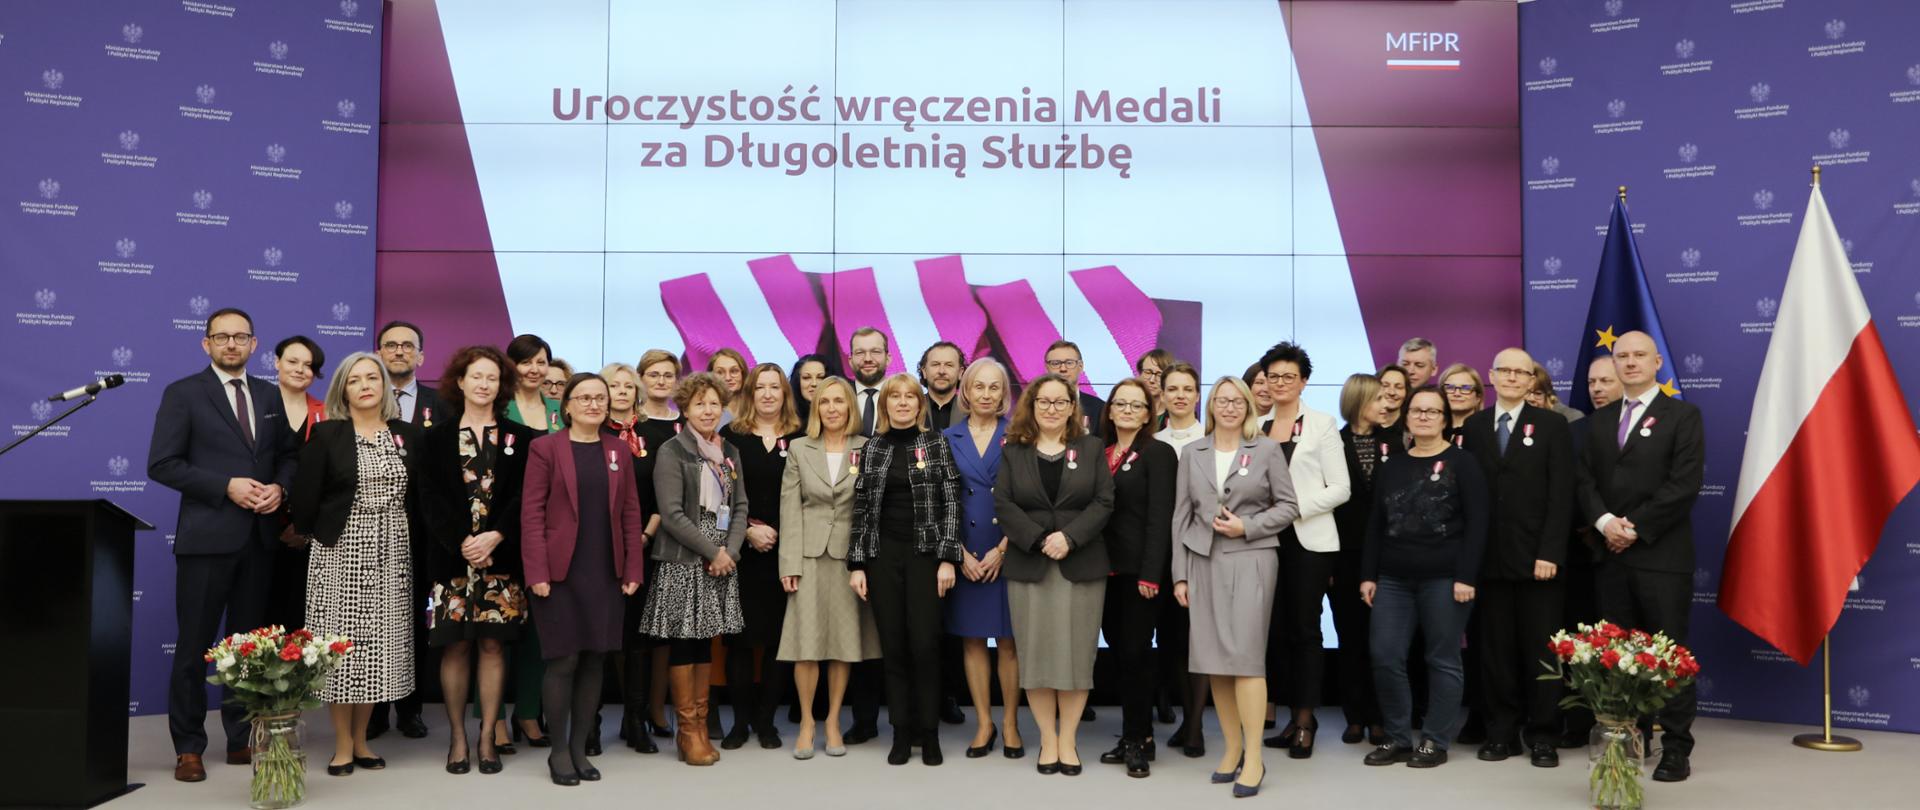 Medale za Długoletnią Służbę dla pracowników Ministerstwa Funduszy i Polityki Regionalnej - zdjęcie grupowe odznaczonych